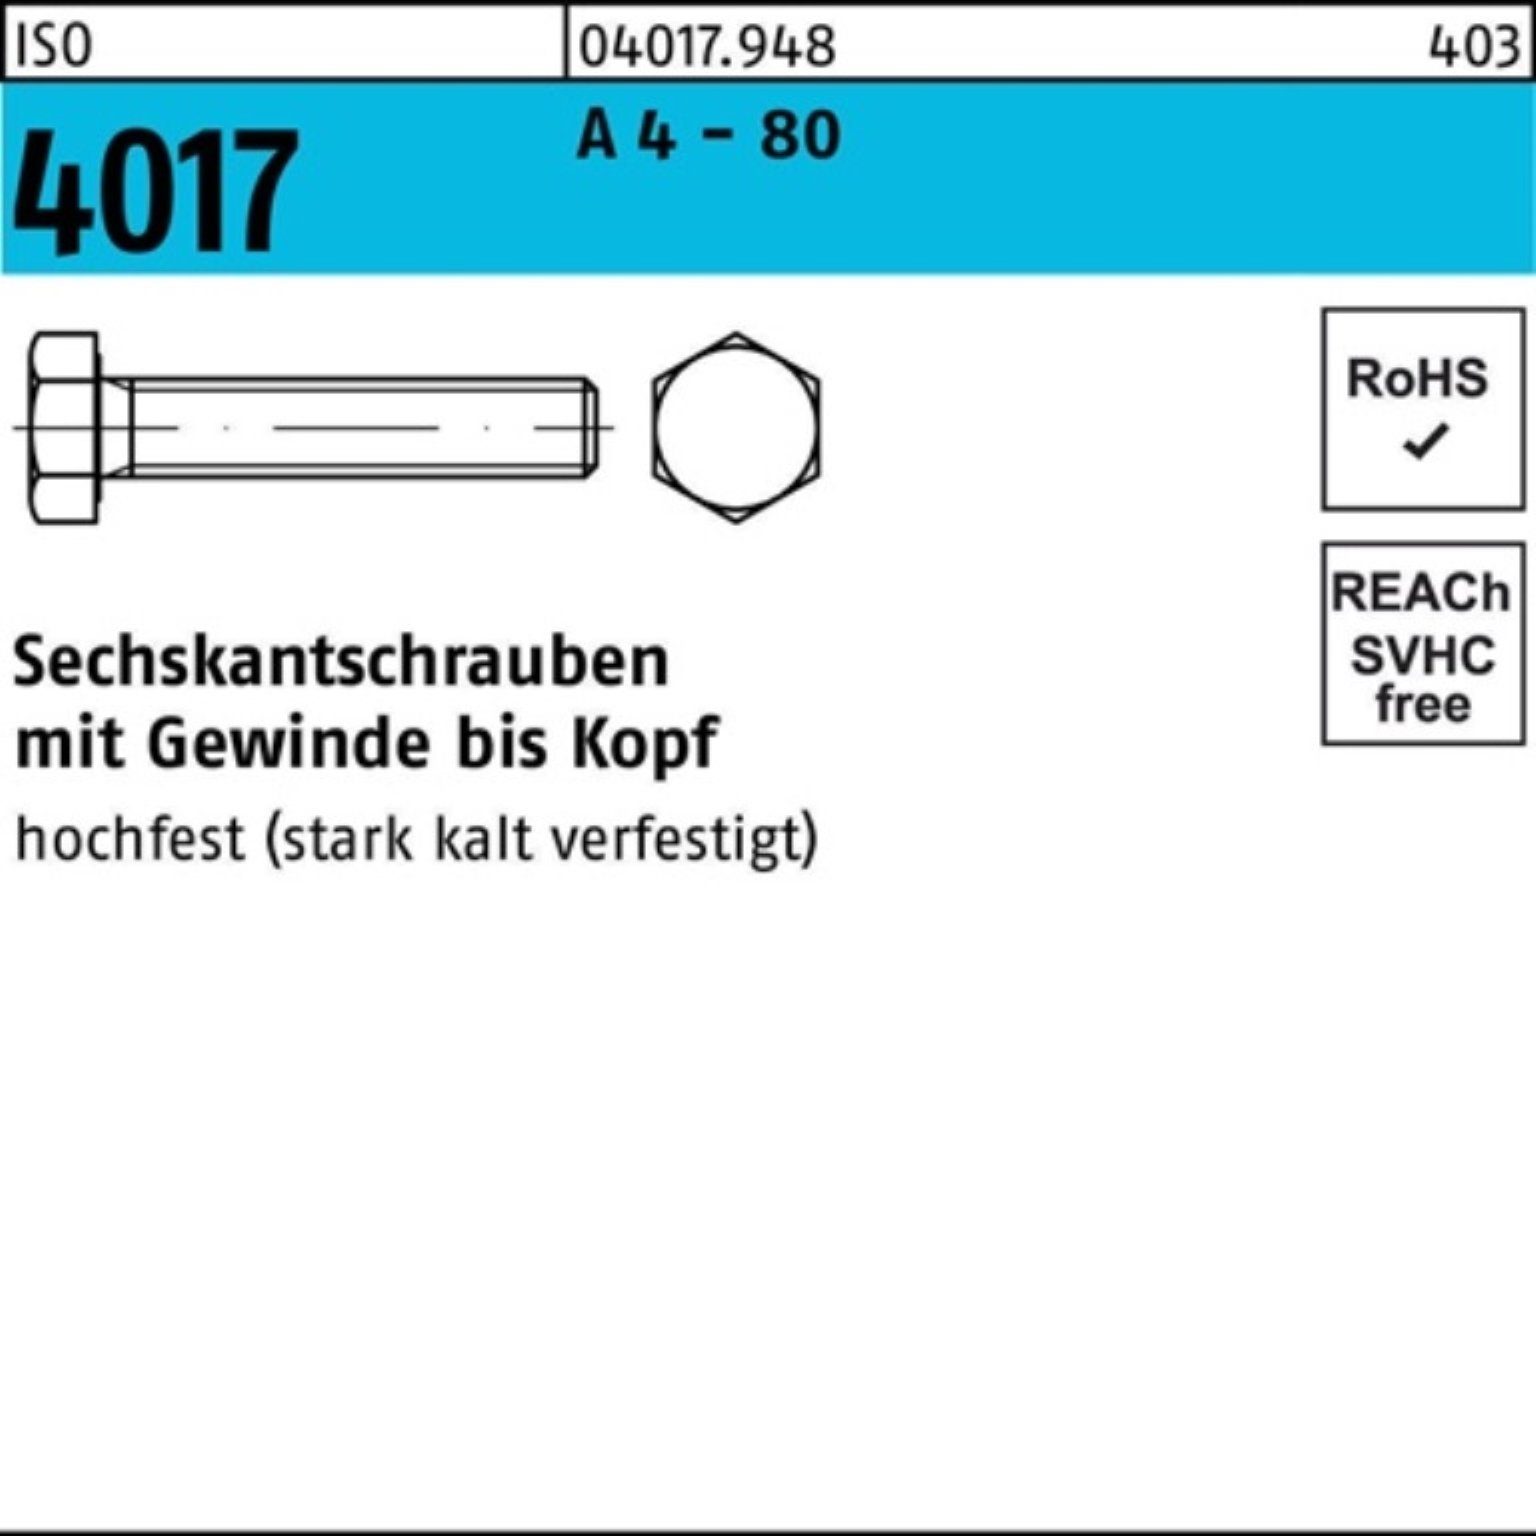 Bufab Sechskantschraube 100er Pack Sechskantschraube ISO 4017 VG M10x 16 A 4 - 80 100 Stück I